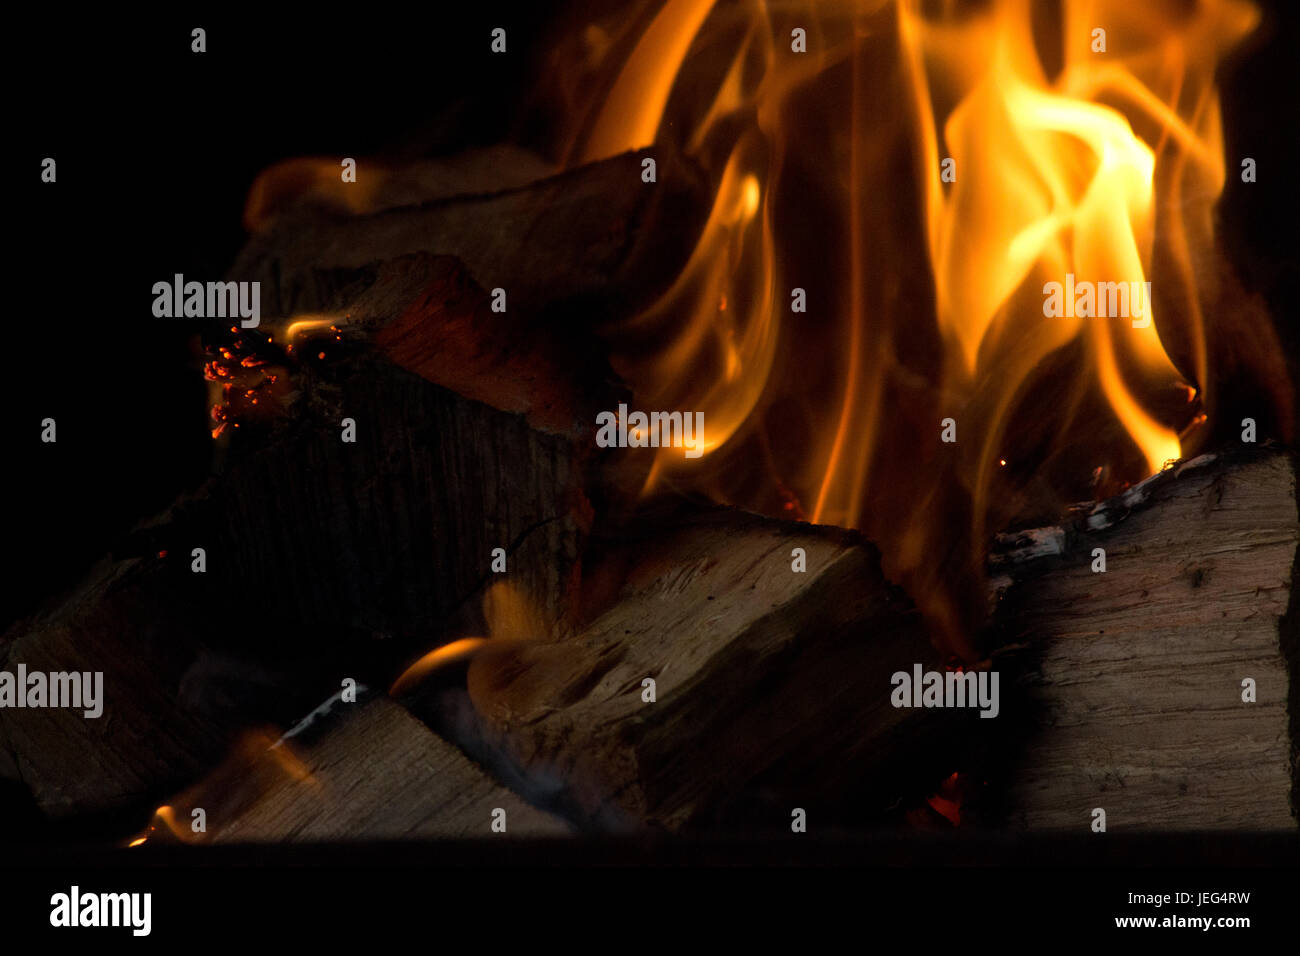 Bild von einem Lagerfeuer in der Nacht, mit Hickory-Protokolle brennen Stockfoto